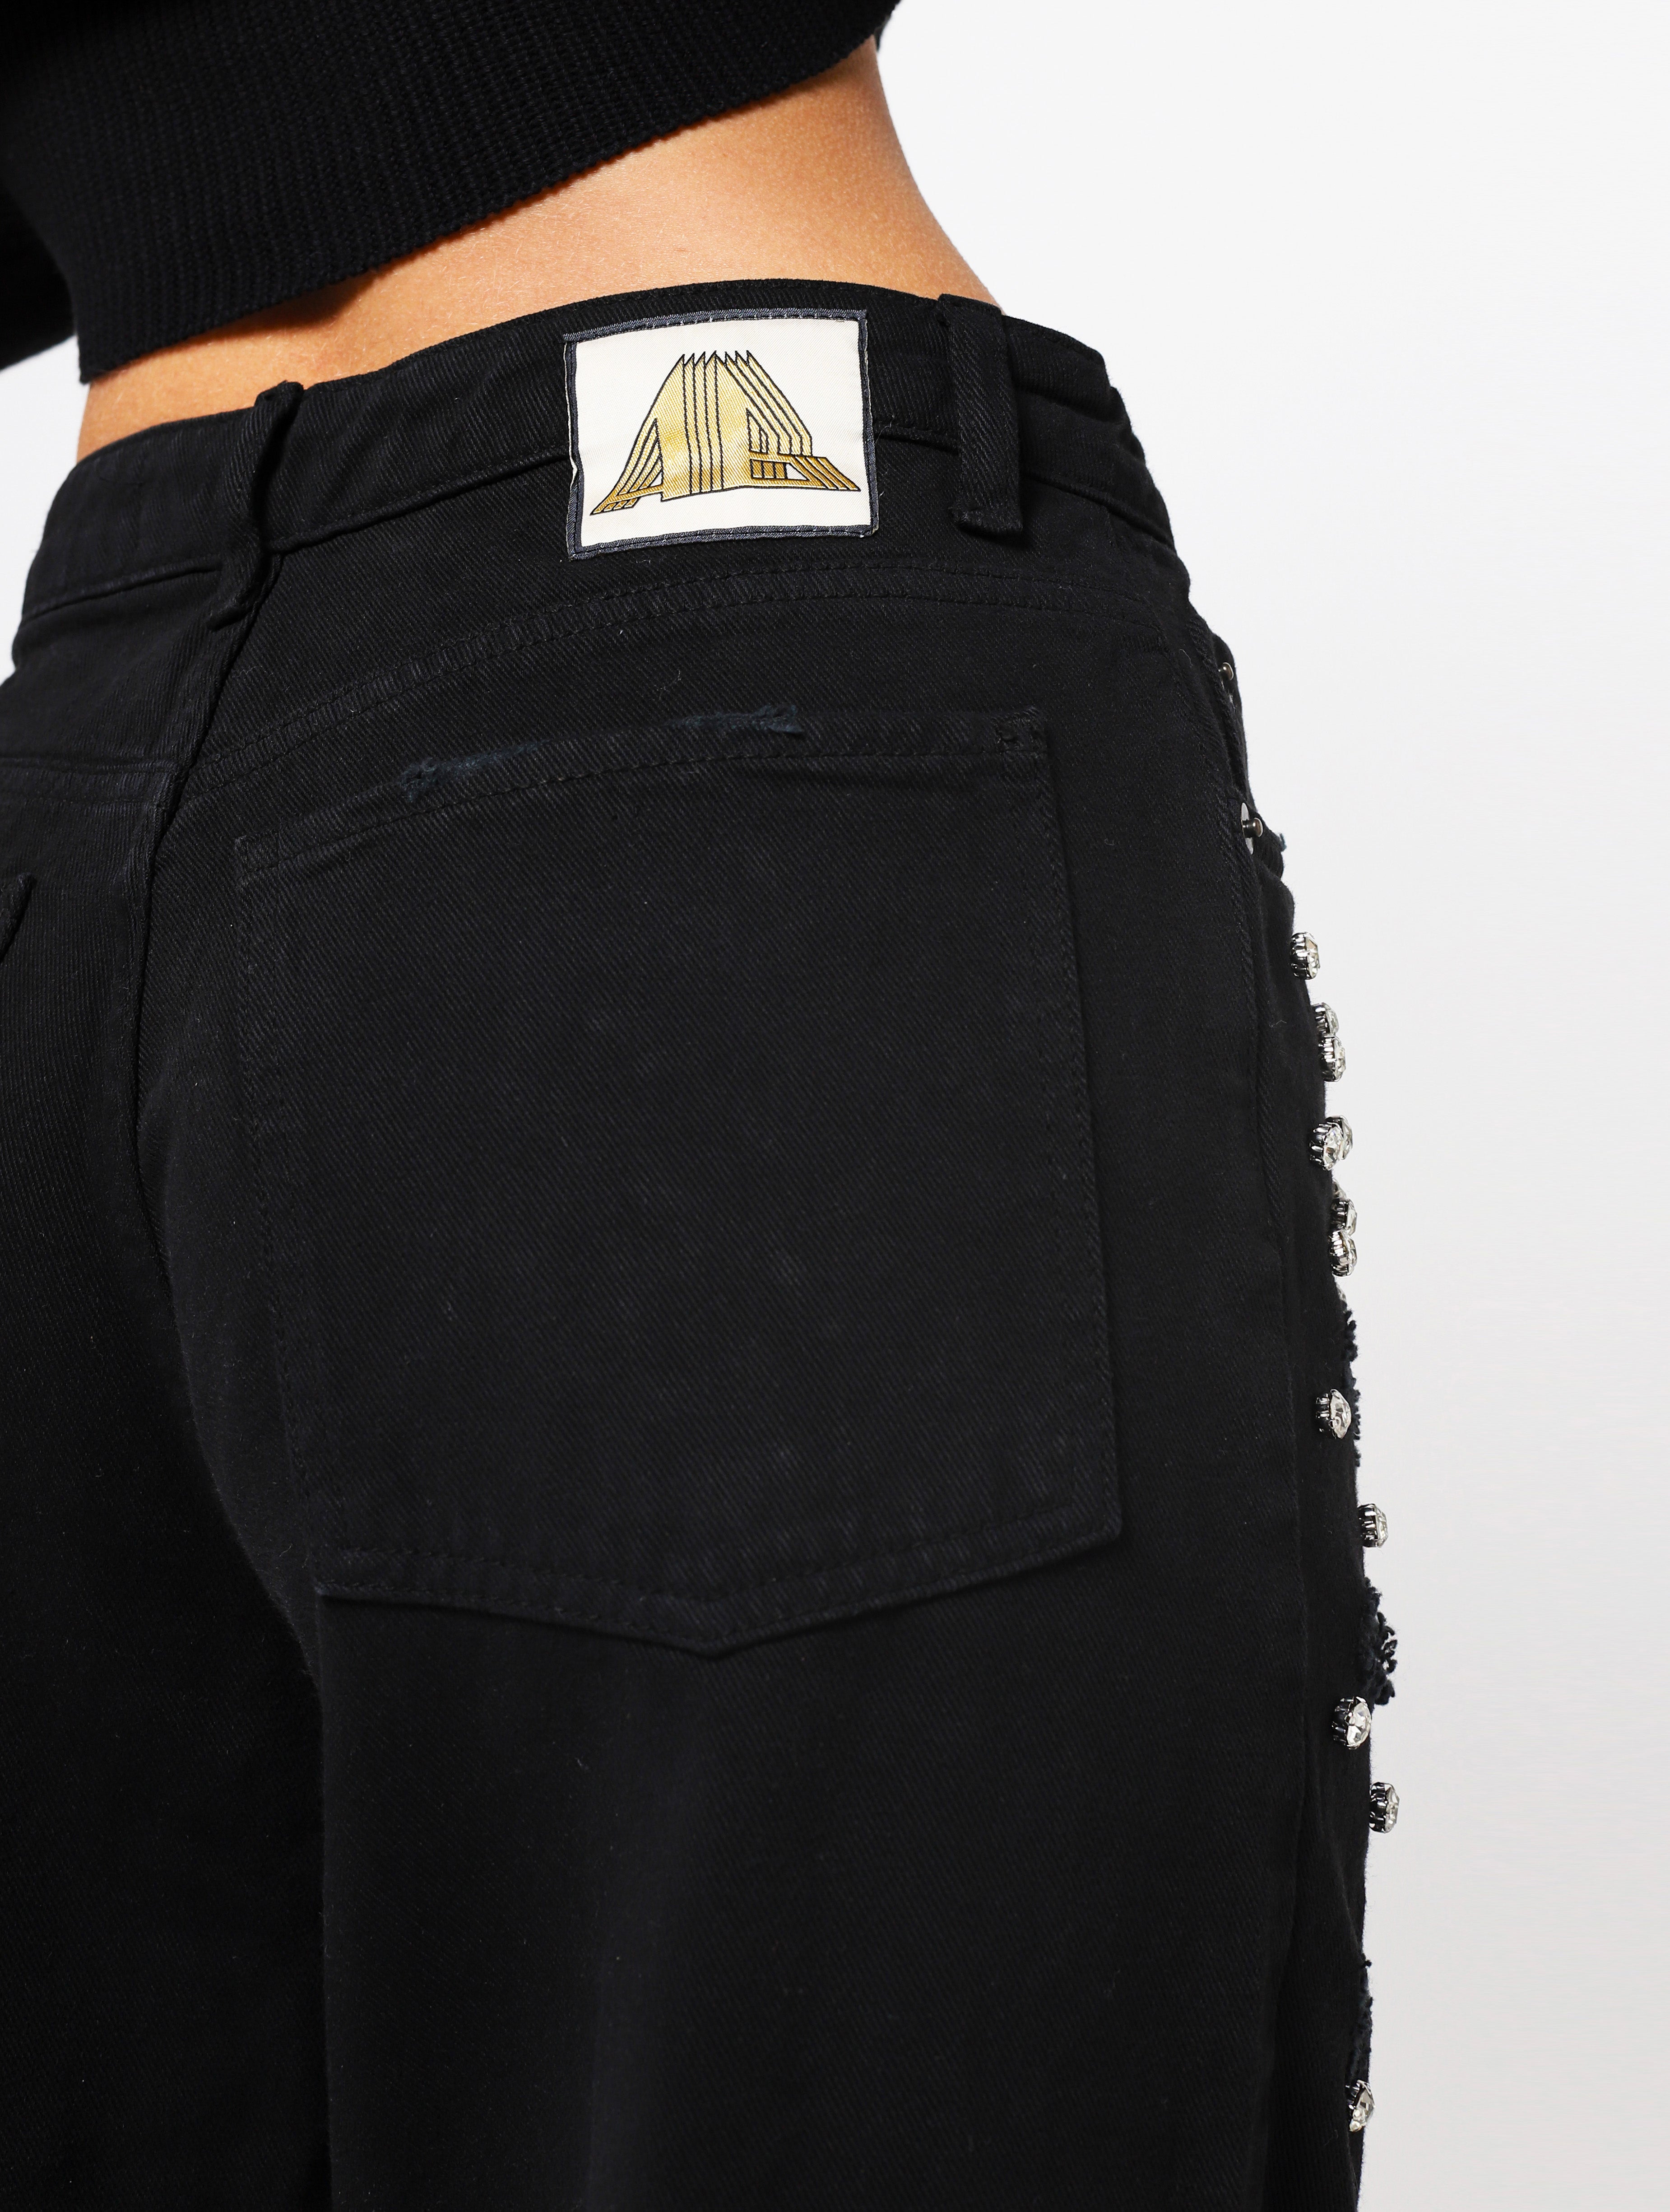 Jeans con 5 tasche, gioielli applicati e lacerazioni sulla parte frontale del pantalone, patch applicata posteriore piccola con nome del brand - nero woman  - 4